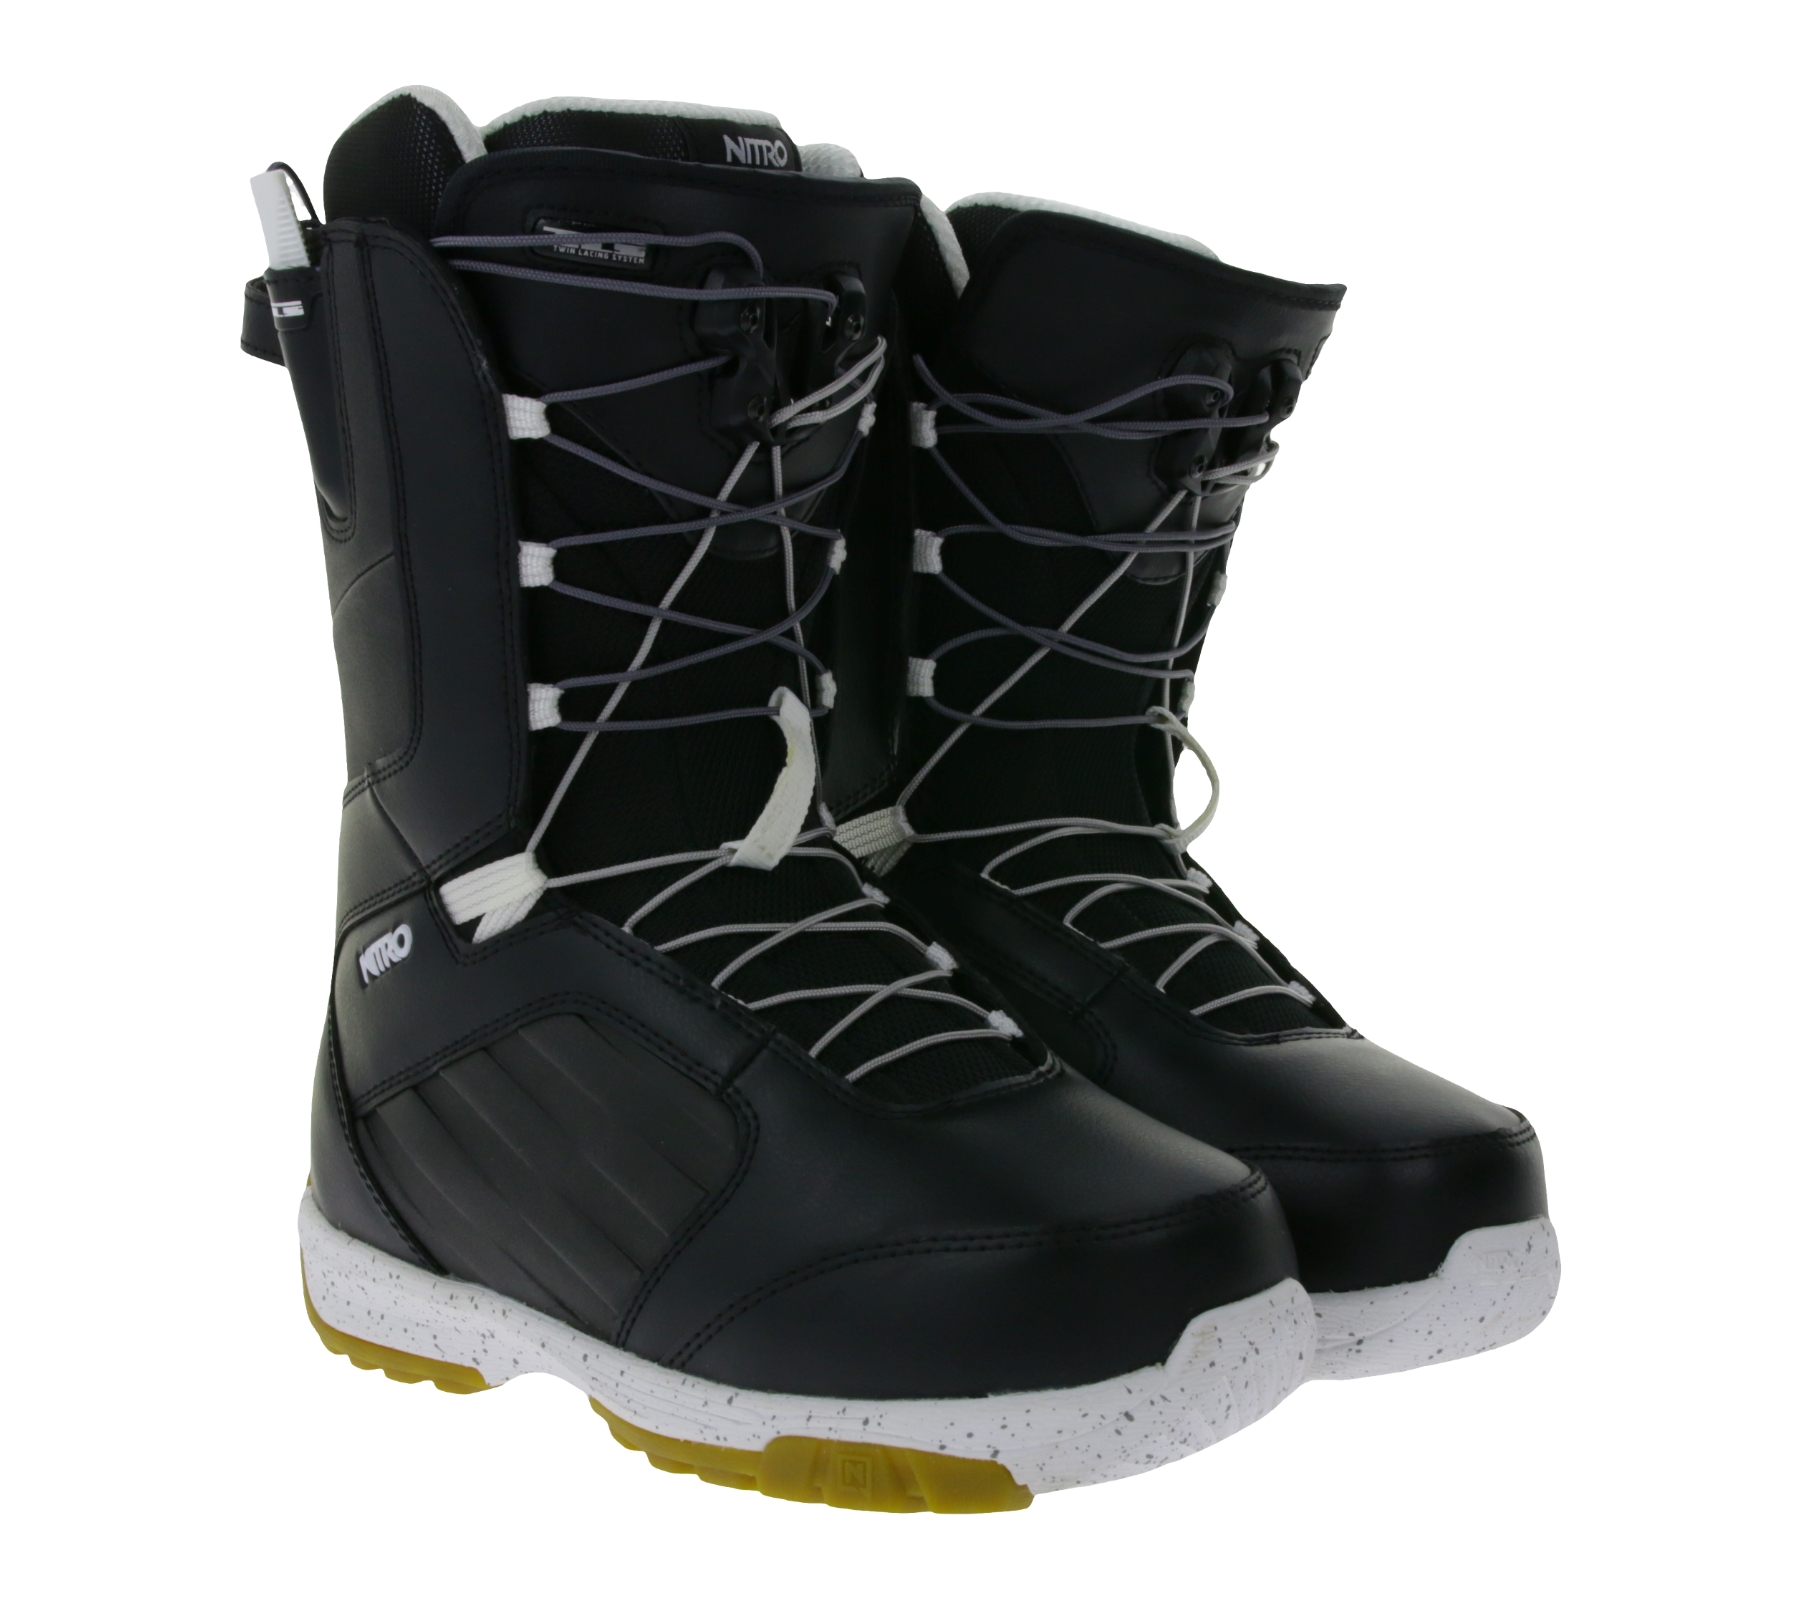 NITRO Anthem TLS Damen Snowboard-Boots mit dämpfender EVA-Sohle Wintersport-Stiefel 848450-001 Schwarz/Weiß von NITRO